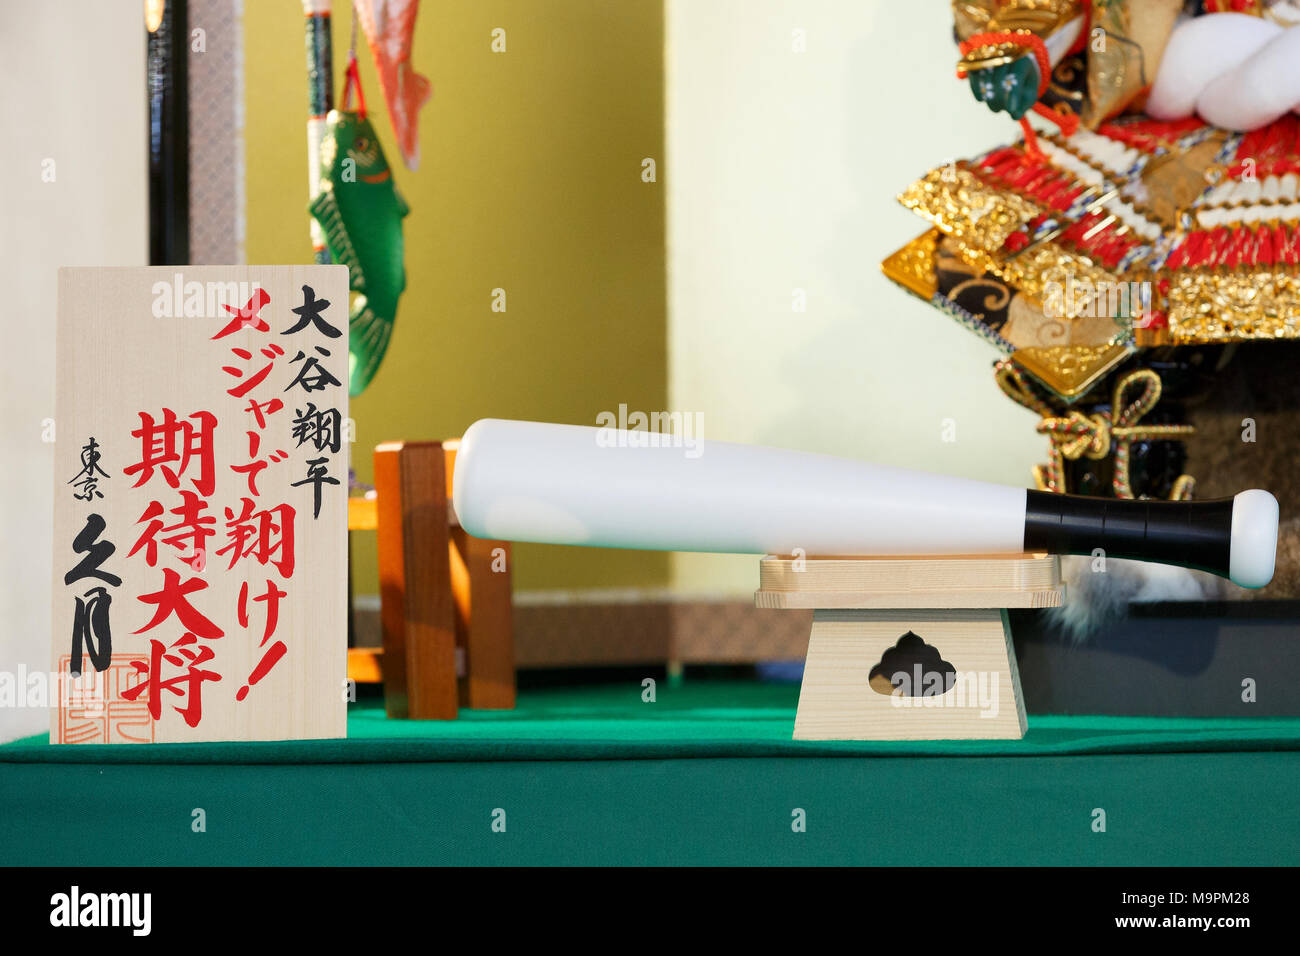 Japanische Doll Maker Kyugetsu stellt neue Hina doll nach professionellen Baseballspieler Shohei Otani vor Tag der Kinder, am 28. März 2018, Tokio, Japan modelliert. Die japanische Doll Maker Kyugetsu Co. stellte eine Reihe von Hina Puppen modelliert nach Japanischen professionellen Baseballspieler Shohei Otani und professionelle Shogi Spieler Sota Fujii und Yoshiharu Habu im Showroom der Firma von 28. März bis 29. Tag der Kinder wird jährlich gefeiert am 5. Mai für eine gute Gesundheit und Erfolg für japanische Kinder durch Anzeige von traditionellen Puppen zu wünschen. Credit: Rodrigo Reyes Marin/LBA/Alamy leben Nachrichten Stockfoto